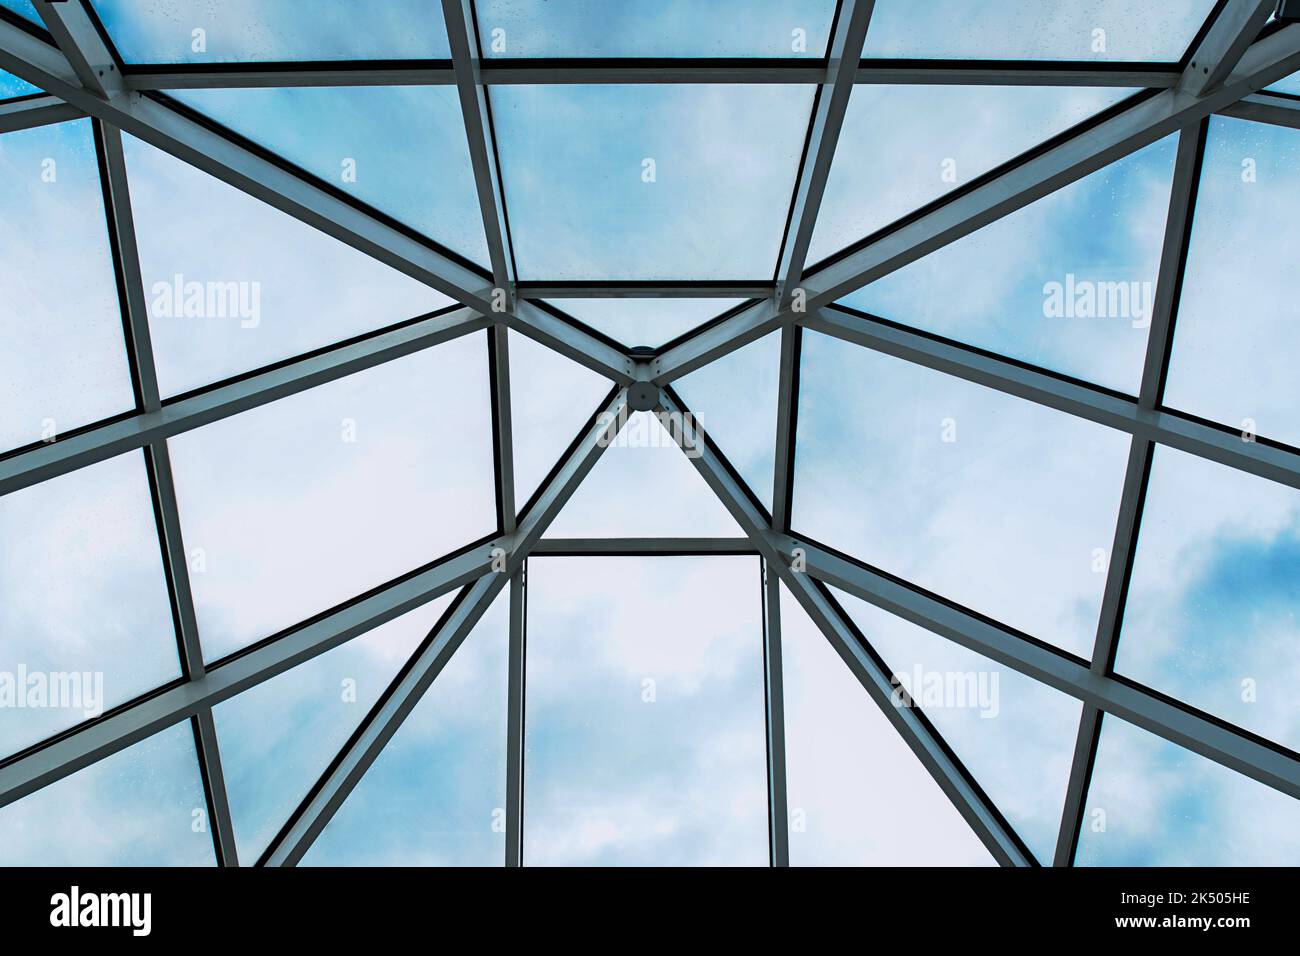 Pyramidenartiges Glasdach symmetrisch dargestellt Stock Photo